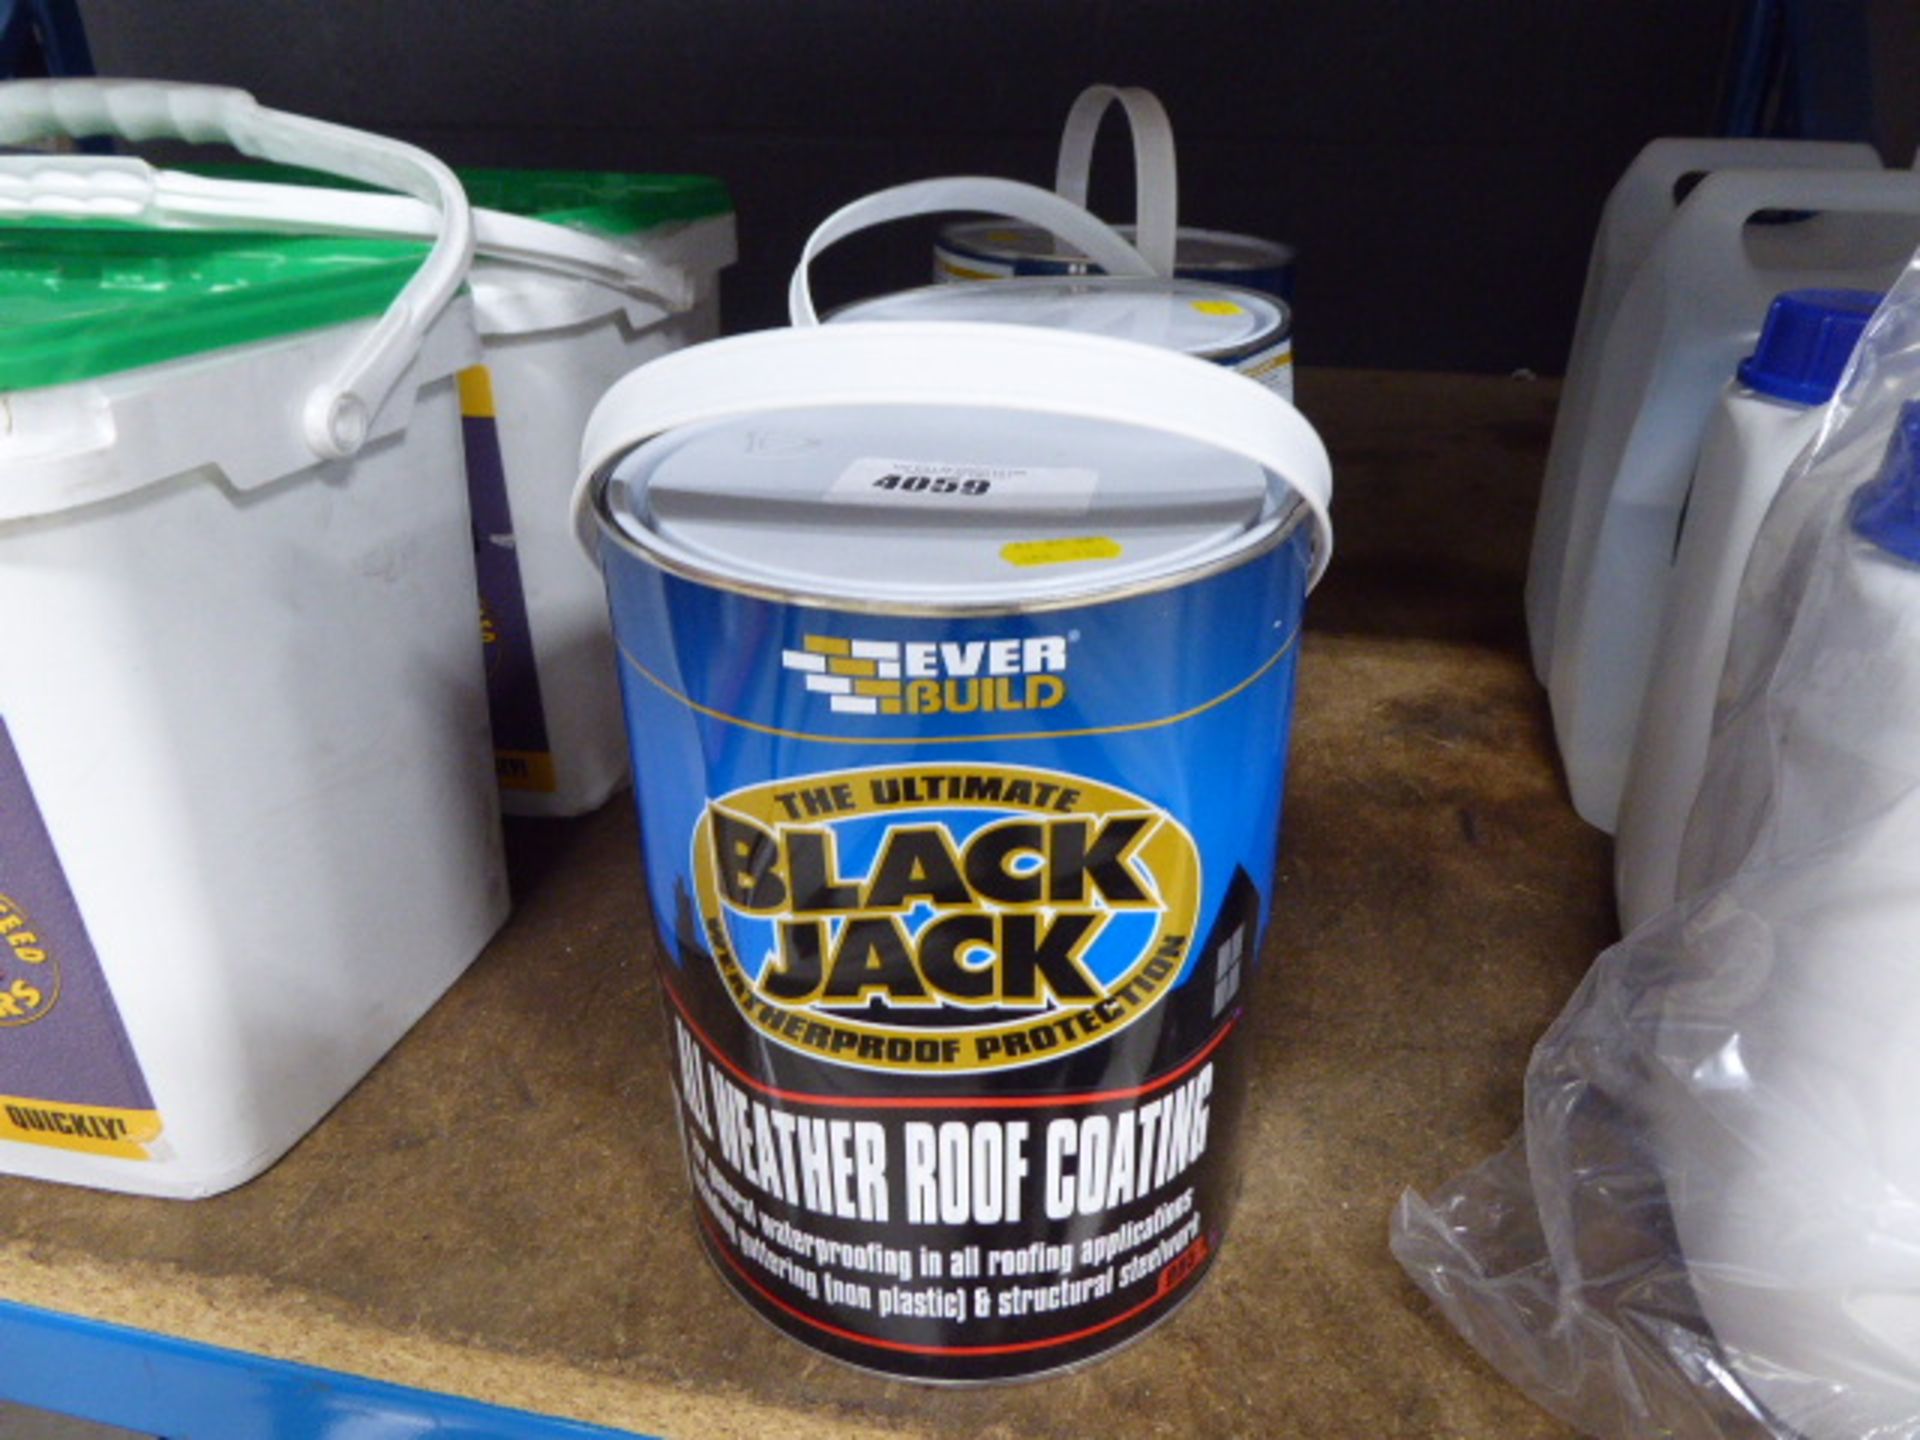 3 tins of Black Jack waterproof protection